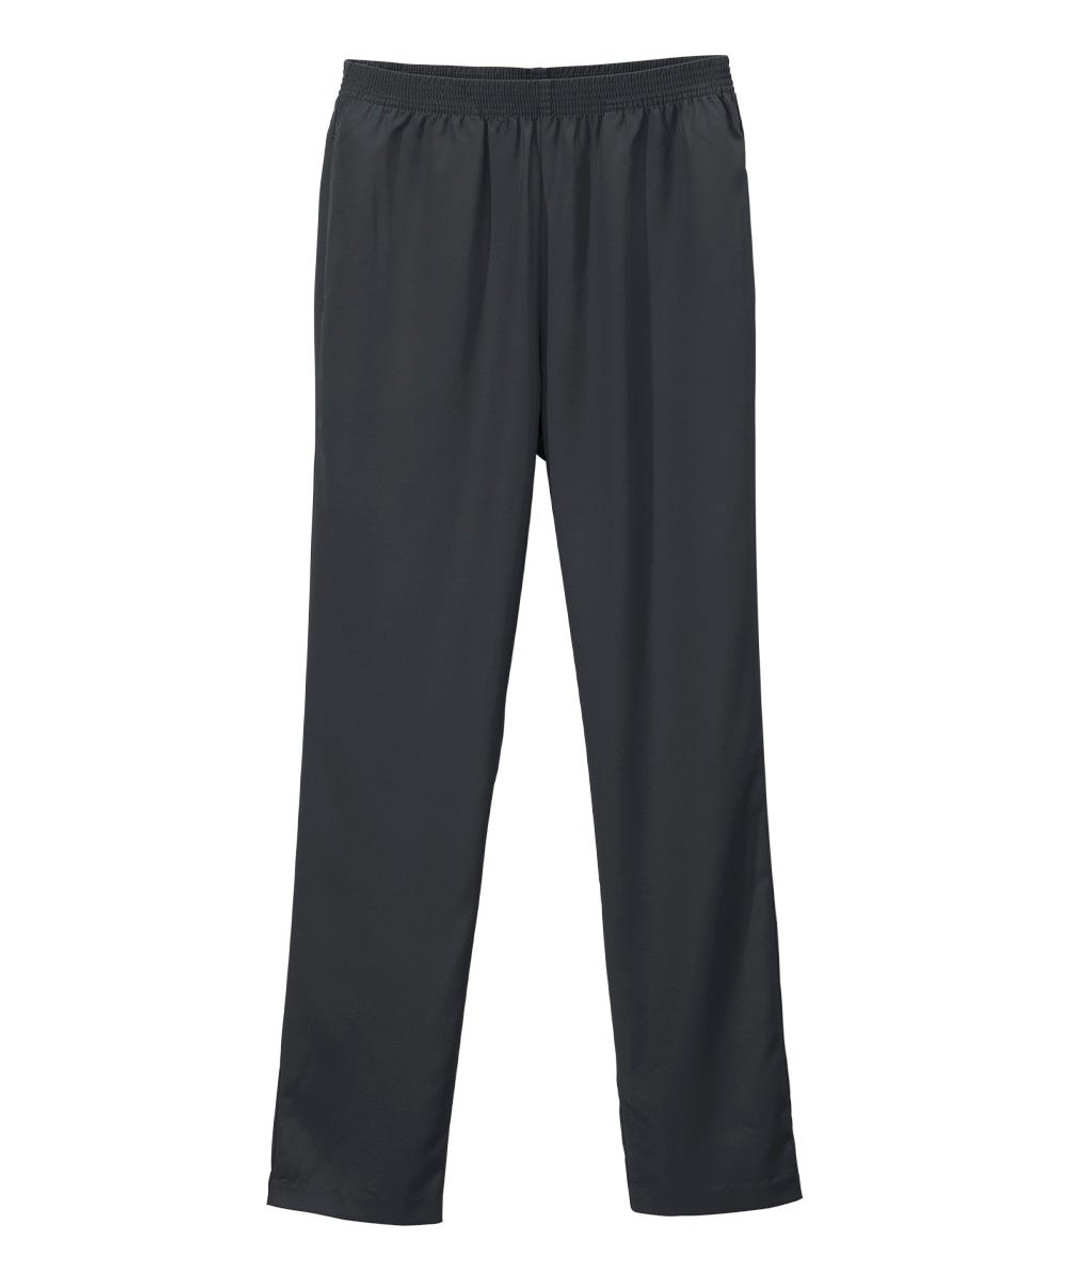 Silverts SV13090 Senior Women's Pull-on Gabardine Pant - Elastic Waist Pants for Women Black, Size=12, SV13090-BLK-12